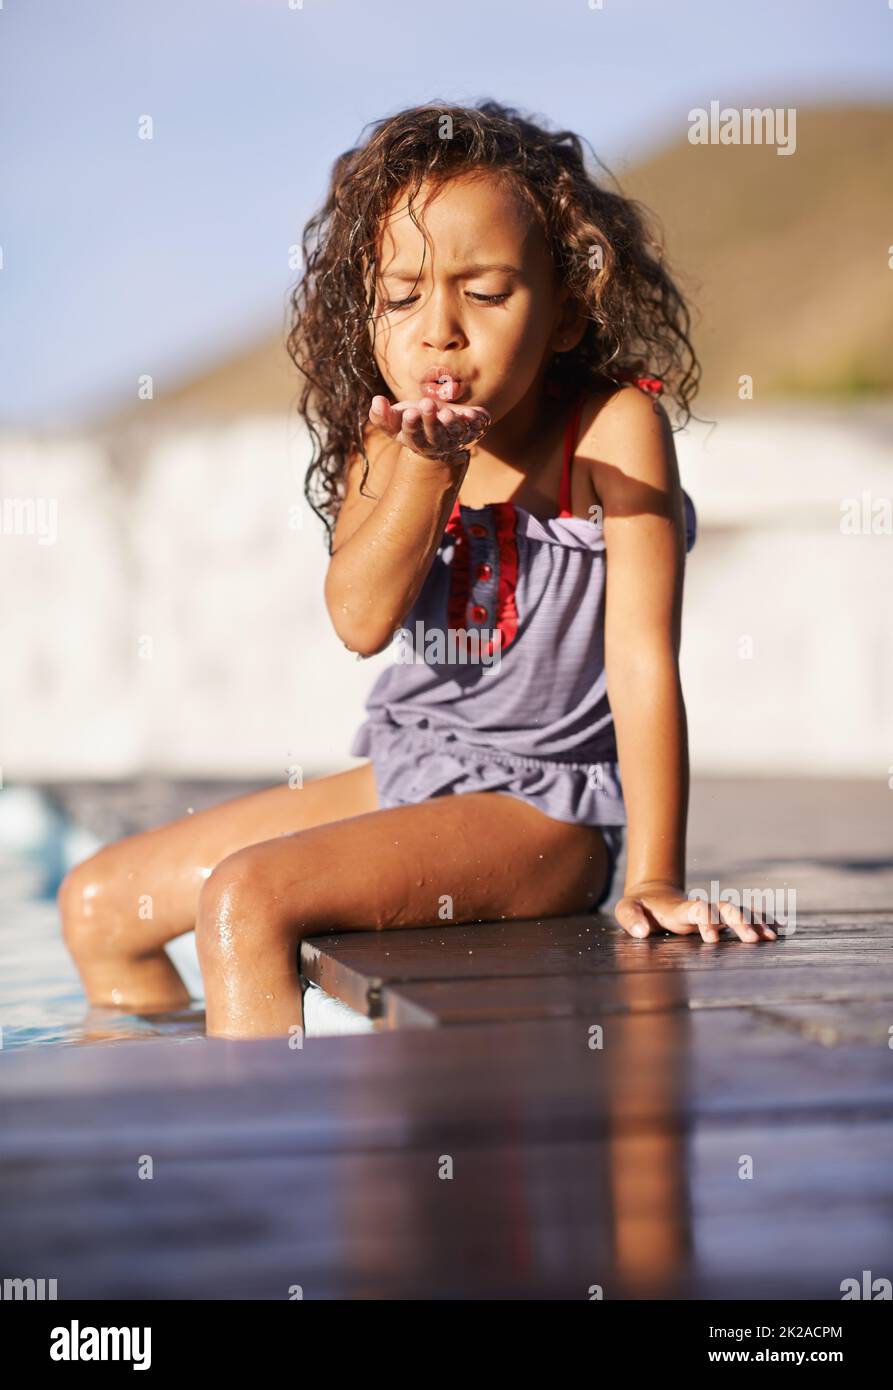 Divertimento in acqua. Scatto di una bambina che gioca in piscina. Foto Stock